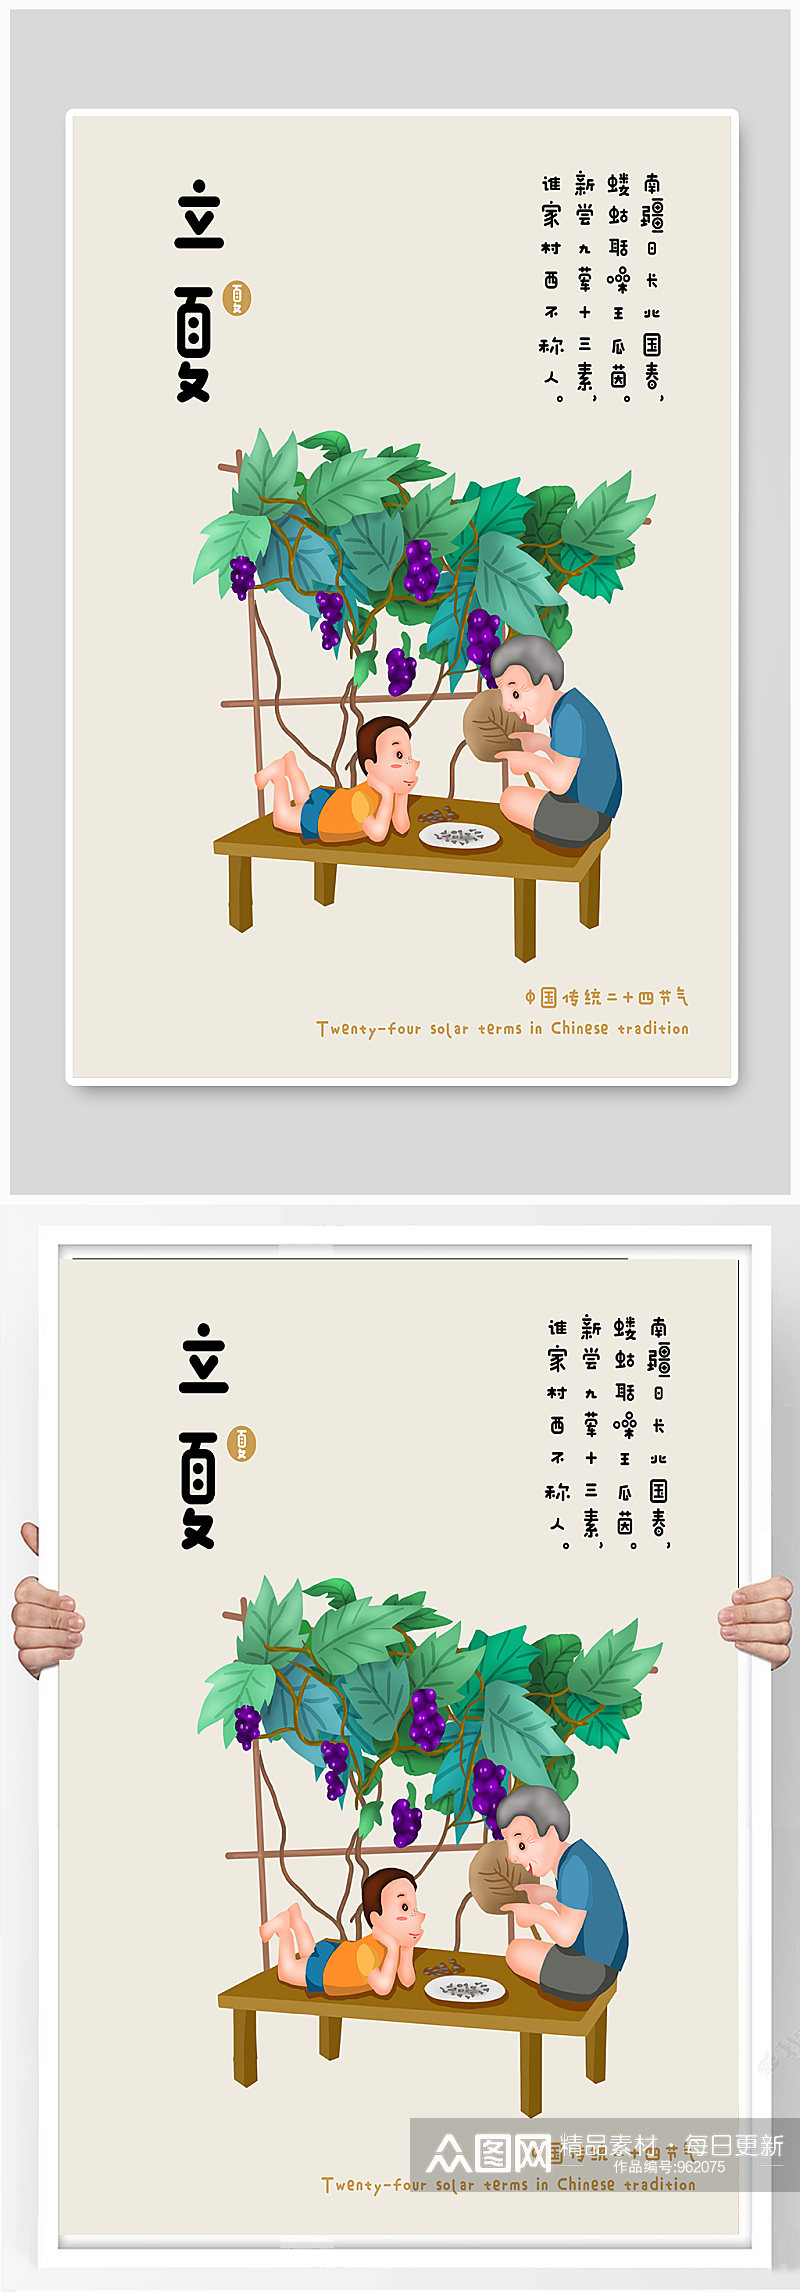 中国传统二十四节气立夏可爱插画风素材